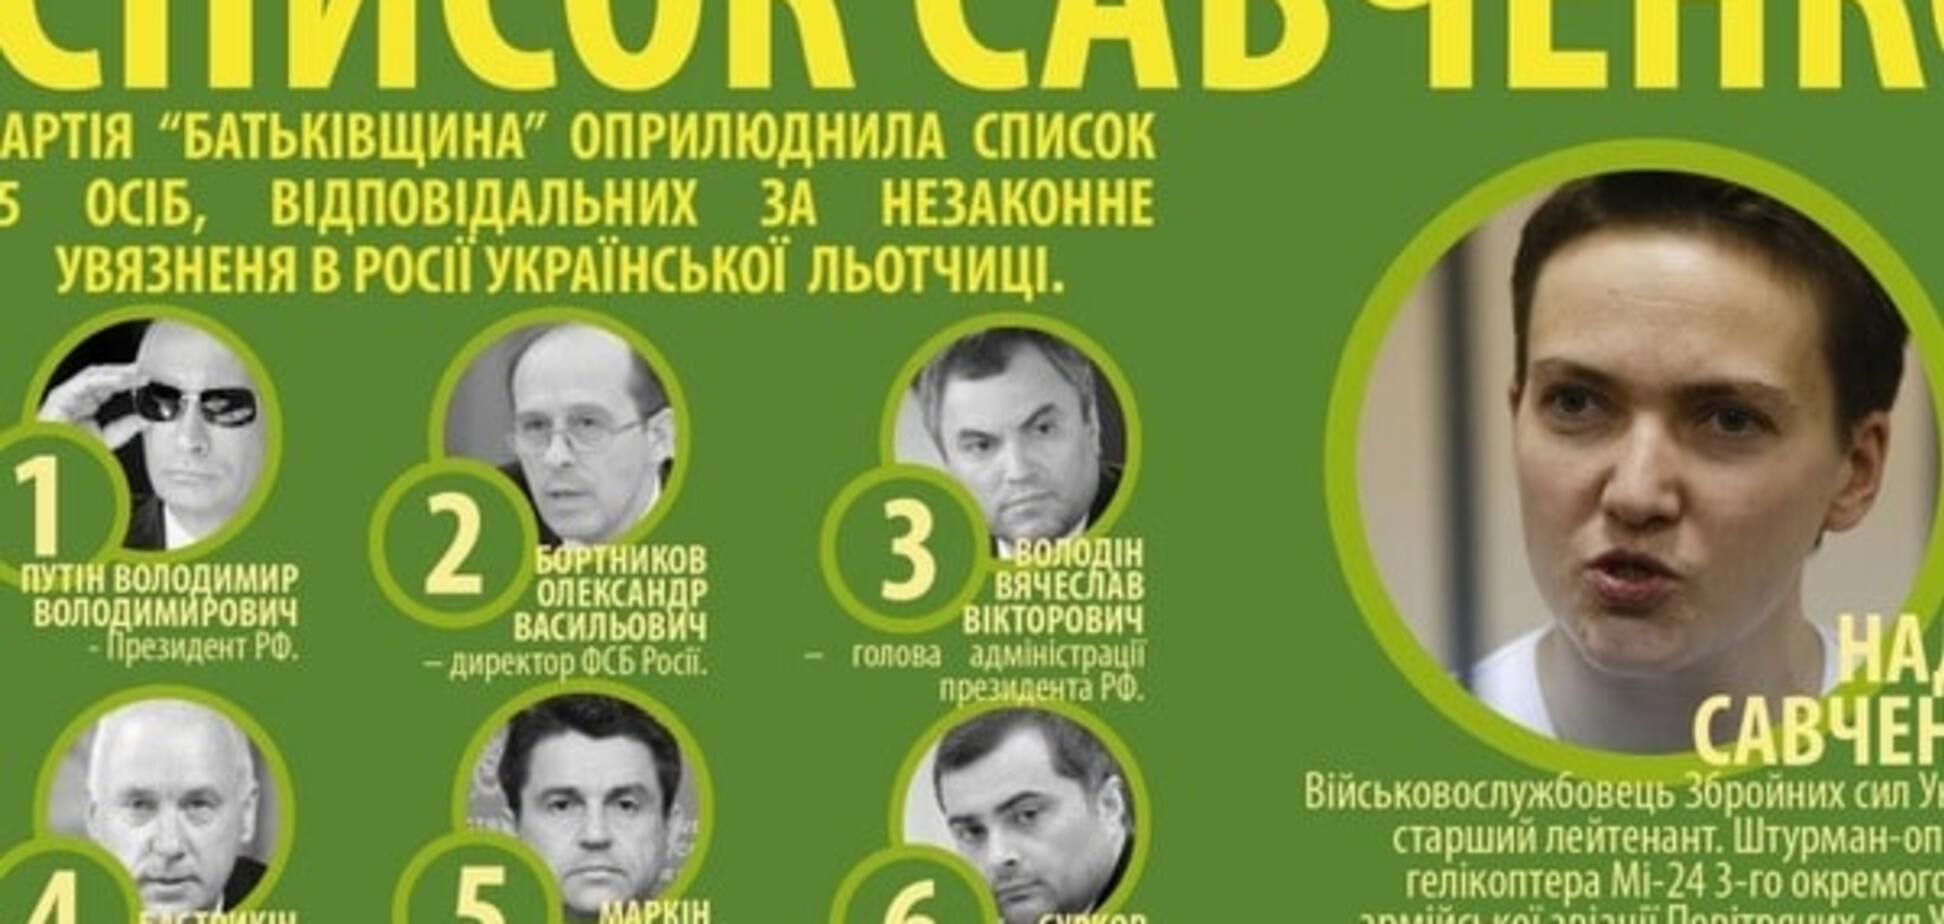 'Список Савченко': под санкции попали 44 россиянина и двое украинцев